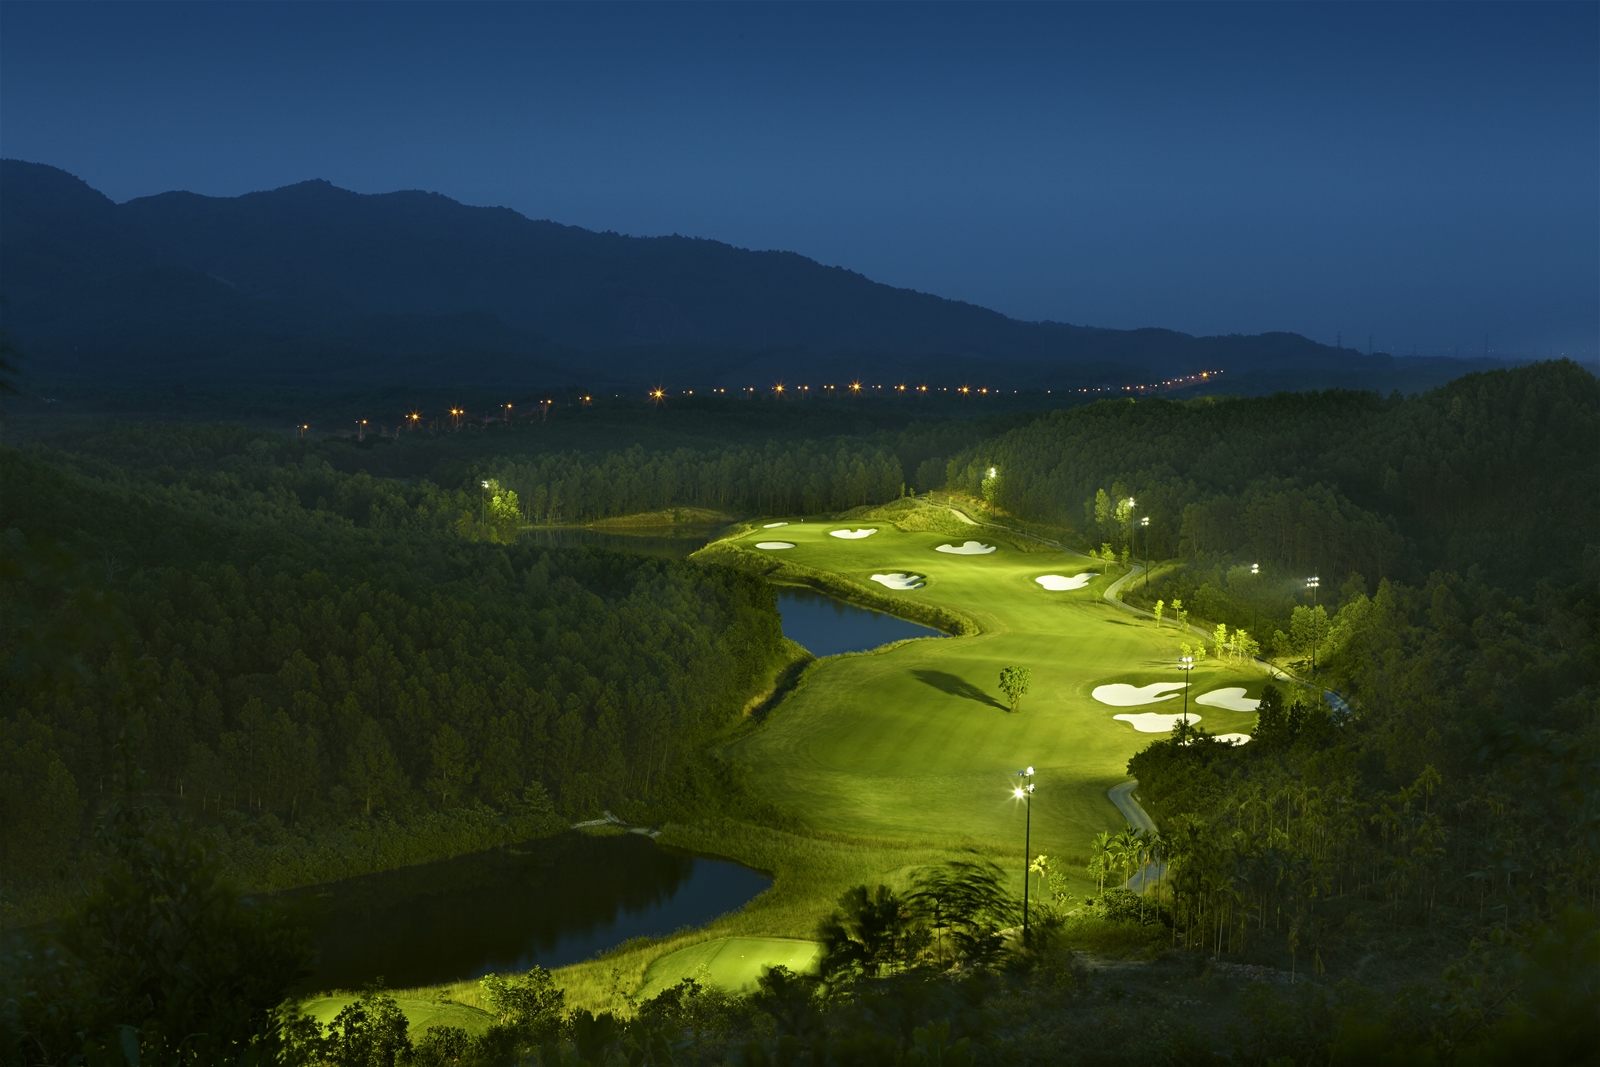 Quang cảnh sân golf Đà Nẵng bà nà hill về đêm